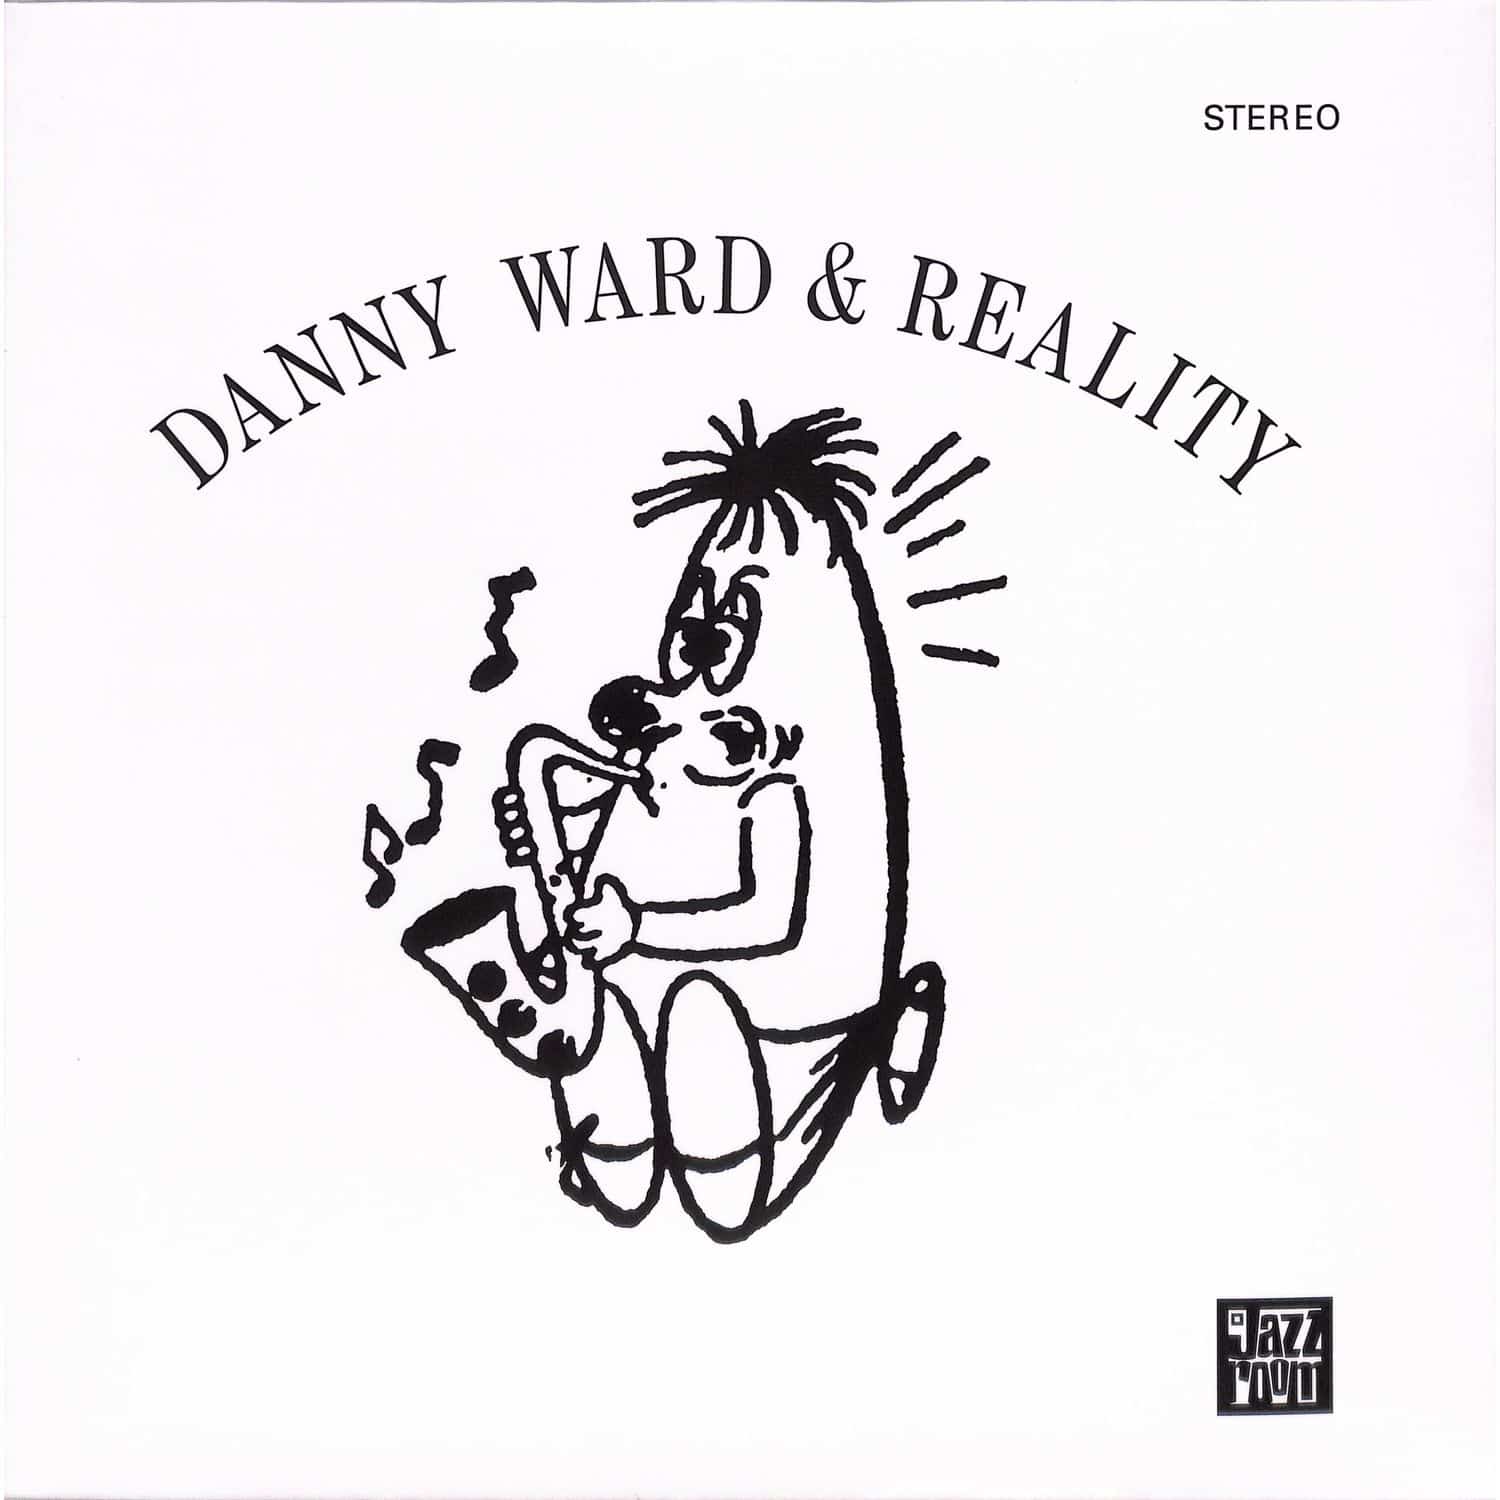 Danny Ward & Reality - DANNY WARD & REALITY 